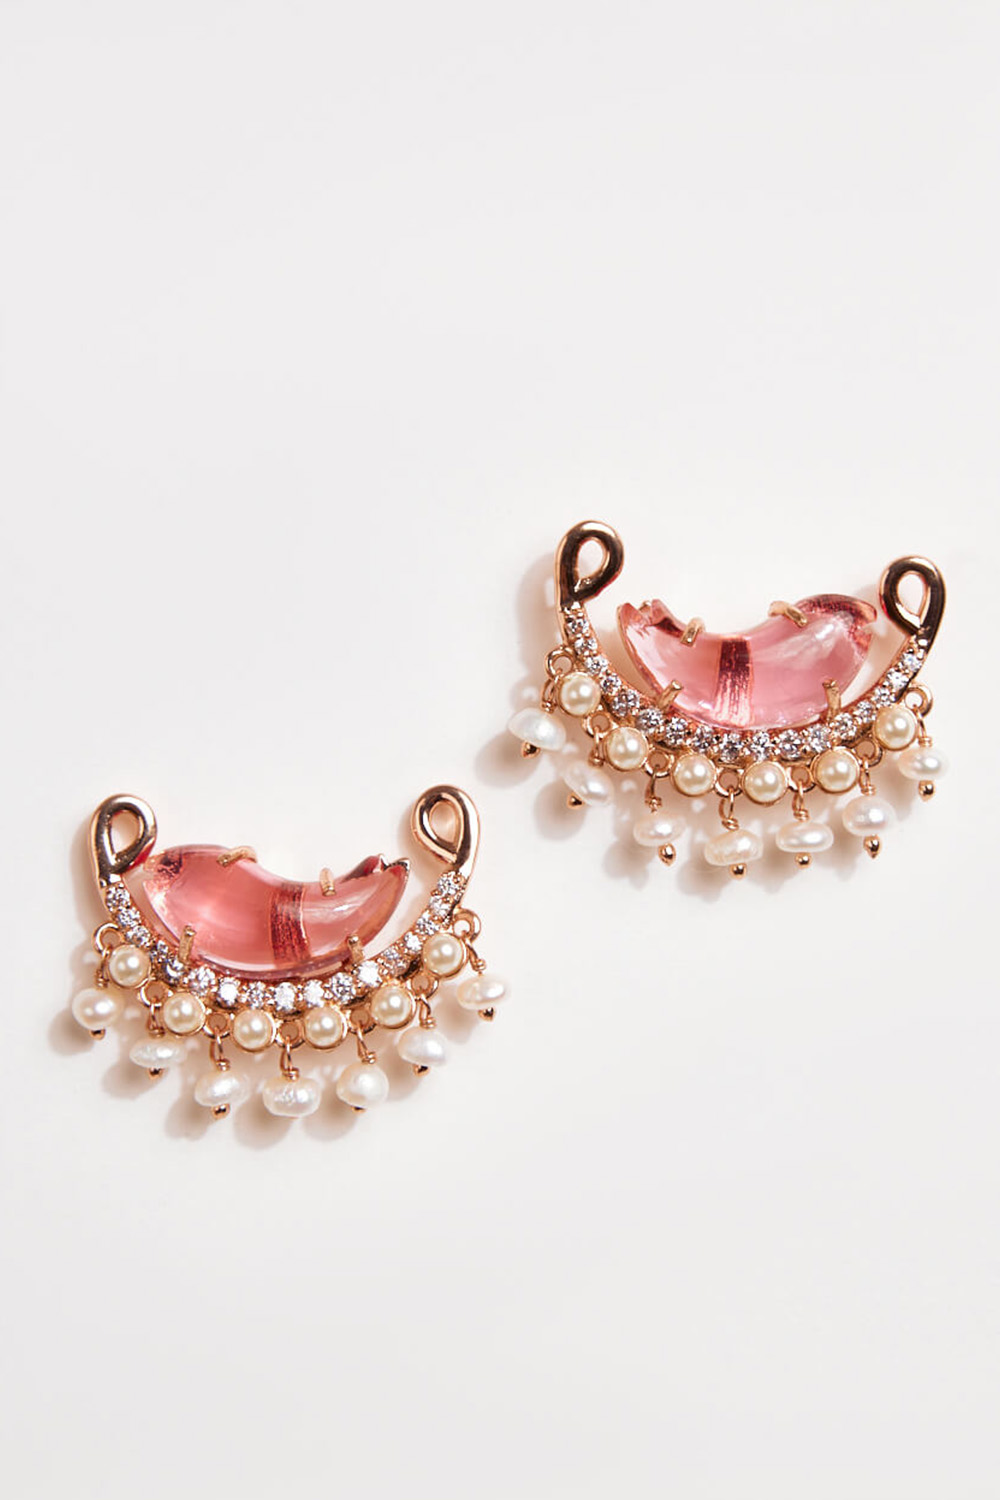 Le Cleo Stud Earrings in Vintage Rose